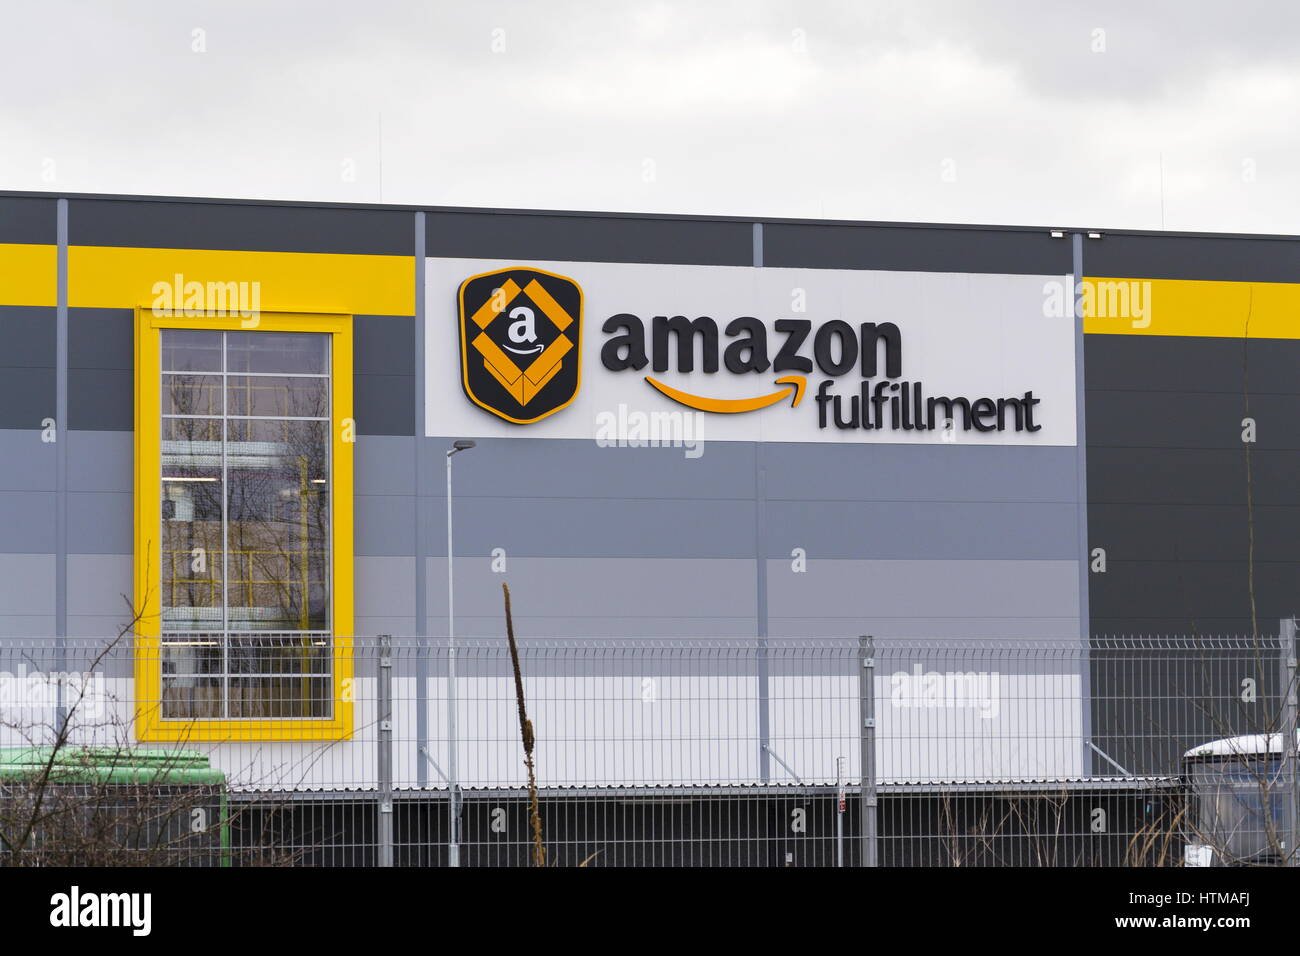 DOBROVIZ, Tschechische Republik - März 12: Online-Händler Amazon Fulfillment Logistik aufbauend auf 12. März 2017 in Dobroviz, Tschechische Republik. Amaz Stockfoto